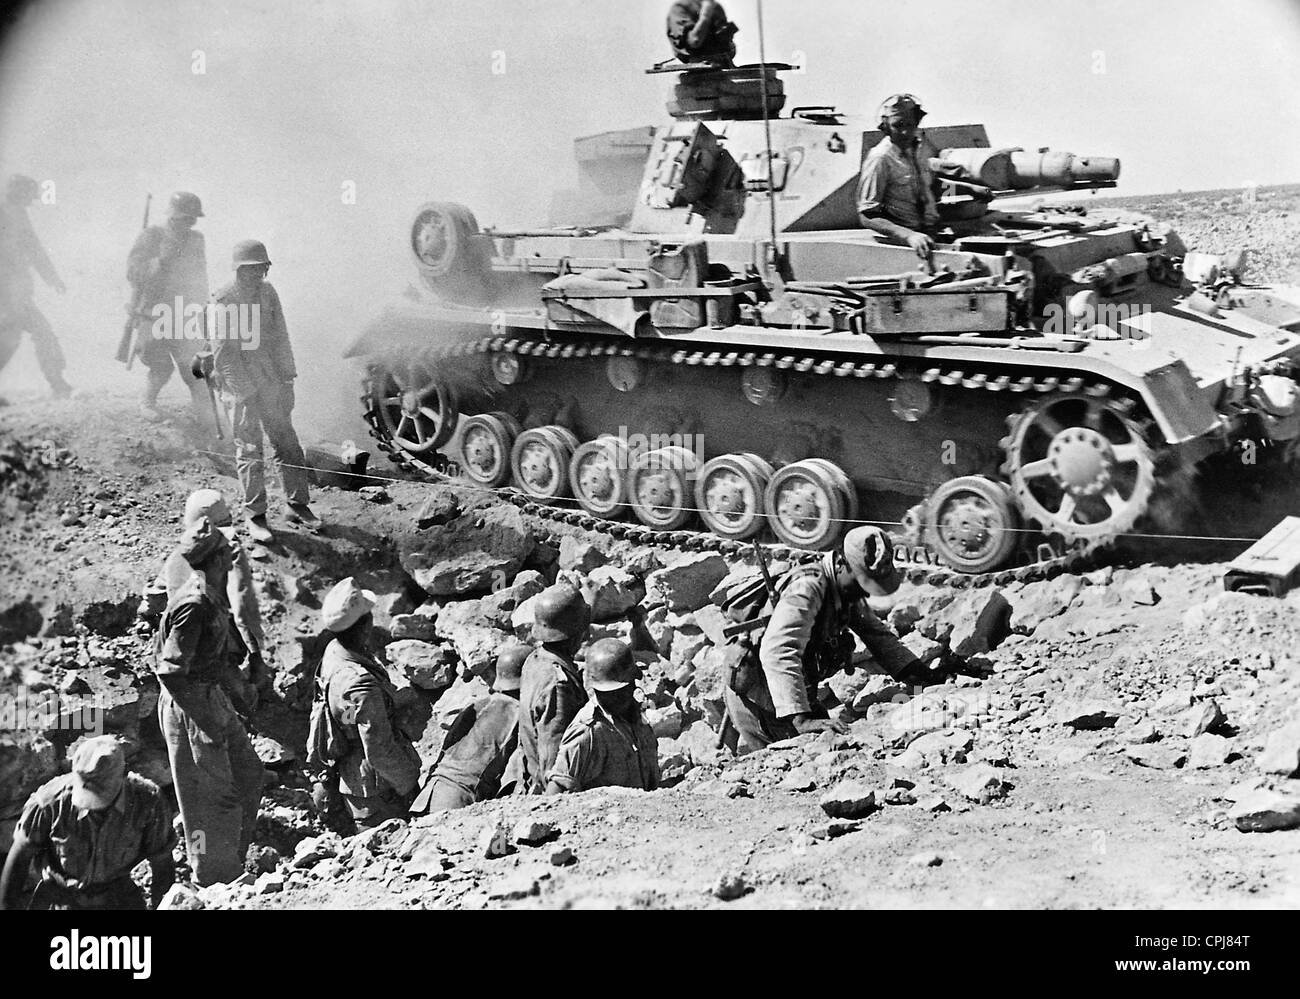 german-afrika-korps-at-the-battle-of-tobruk-1941-CPJ84T.jpg